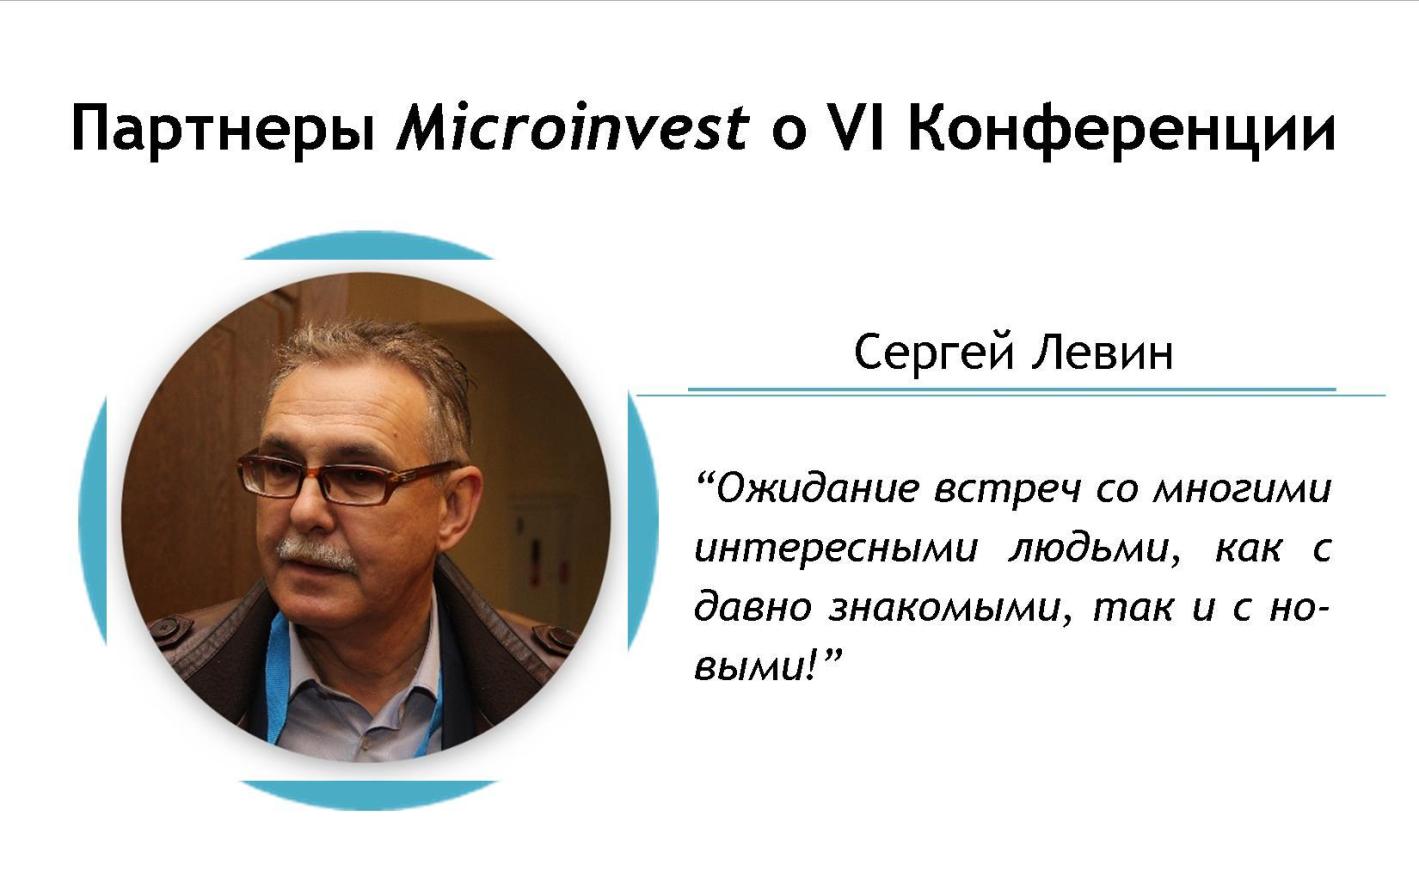 Сергей Левин, Торговые технологии